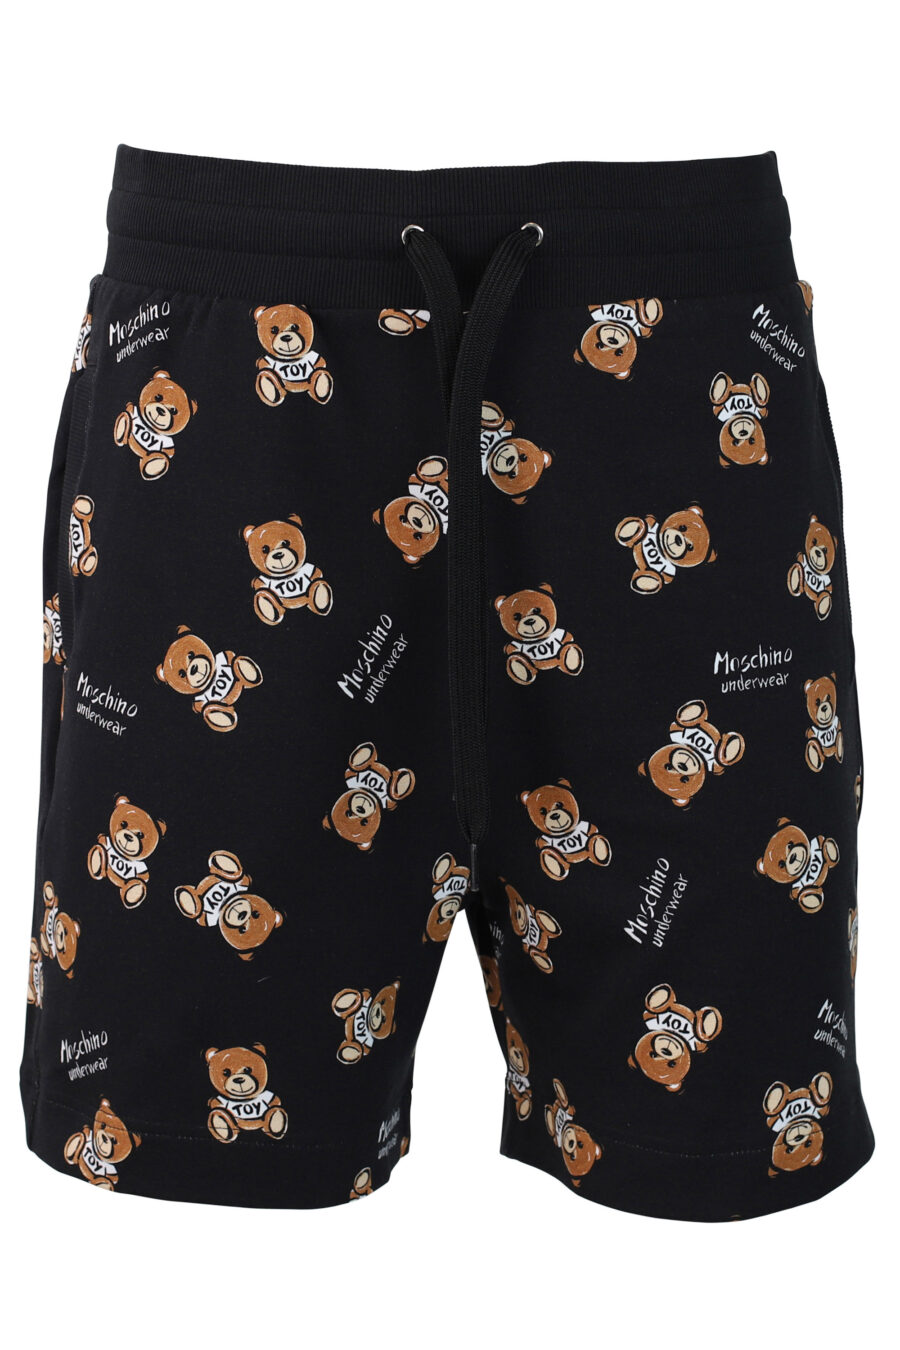 Pantalón de chándal corto negro con oso "all over logo" - IMG 0361